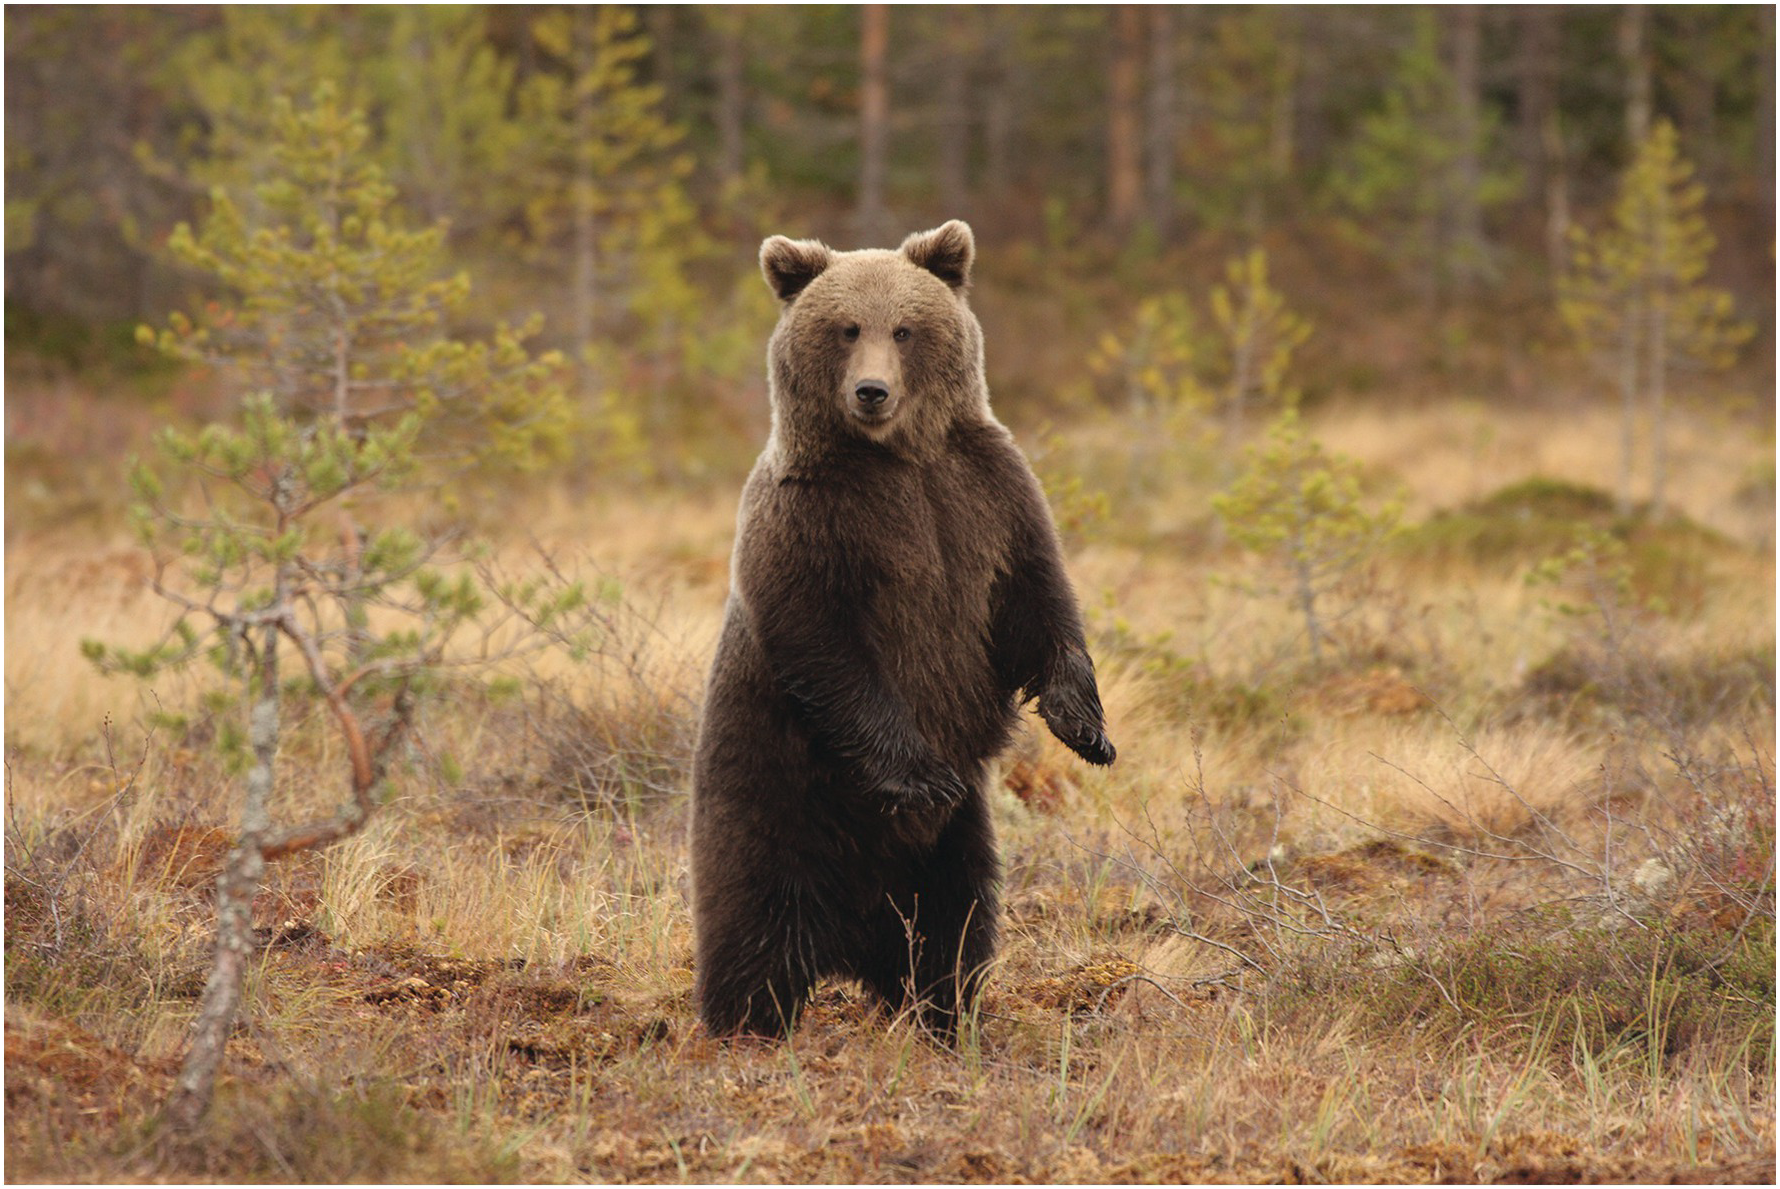 Сибирский бурый медведь.  Ursus arctos collaris — Сибирский бурый медведь. Сибирский бурый медведь фото. Медведь Сибирь. Скорость сибирского медведя